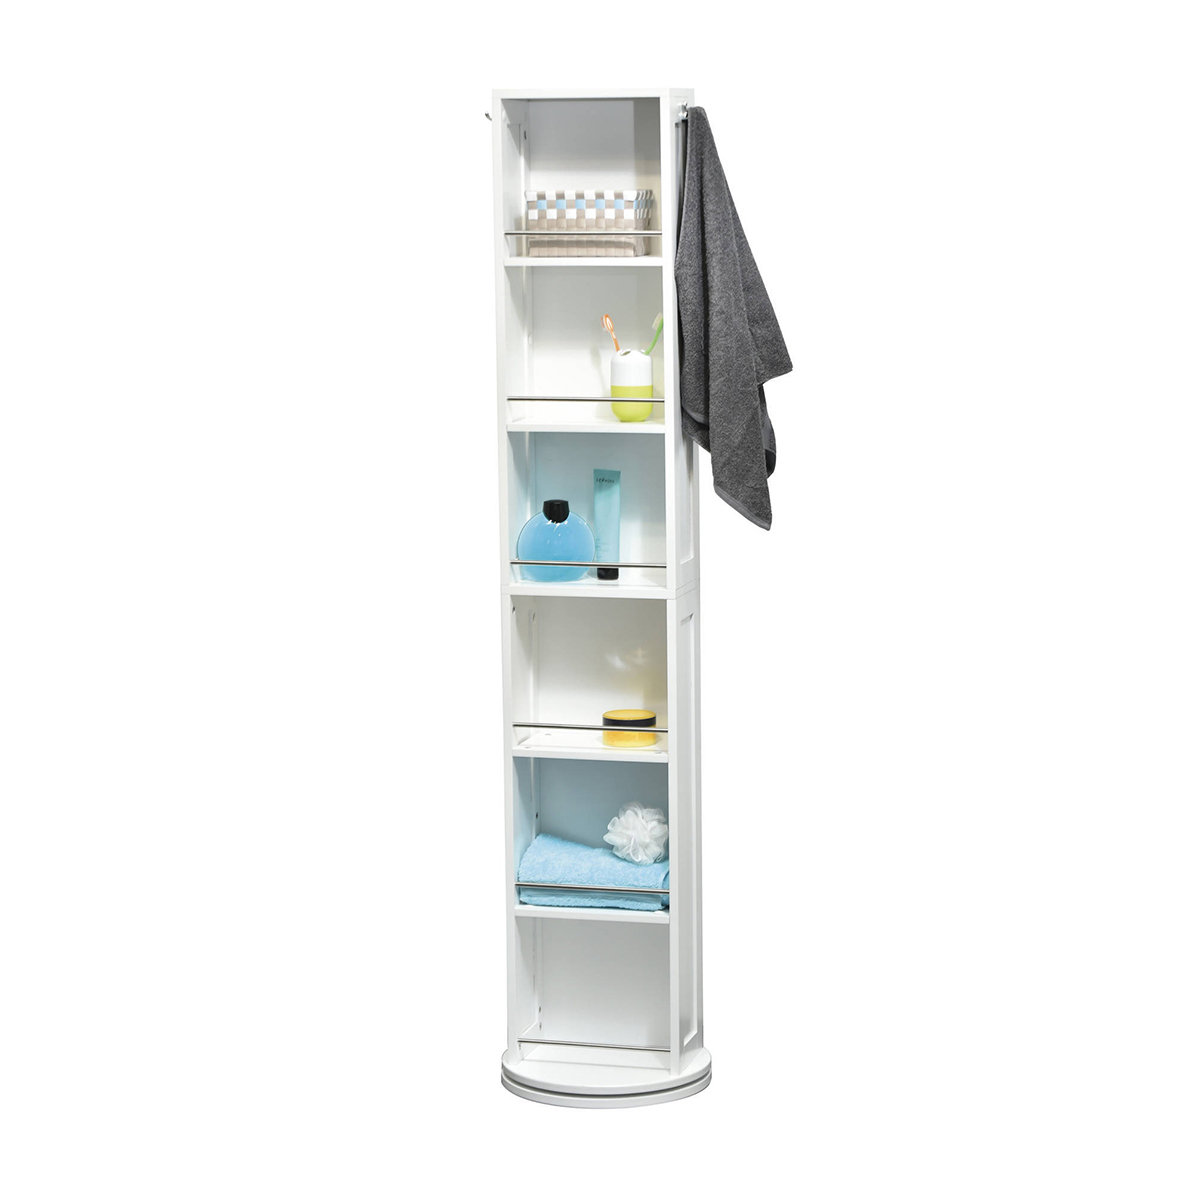 https://assets.wfcdn.com/im/69721155/compr-r85/7293/72936648/swivel-144-diam-x-6610-h-storage-tower-cabinet-organizer-mirror-6-shelves.jpg